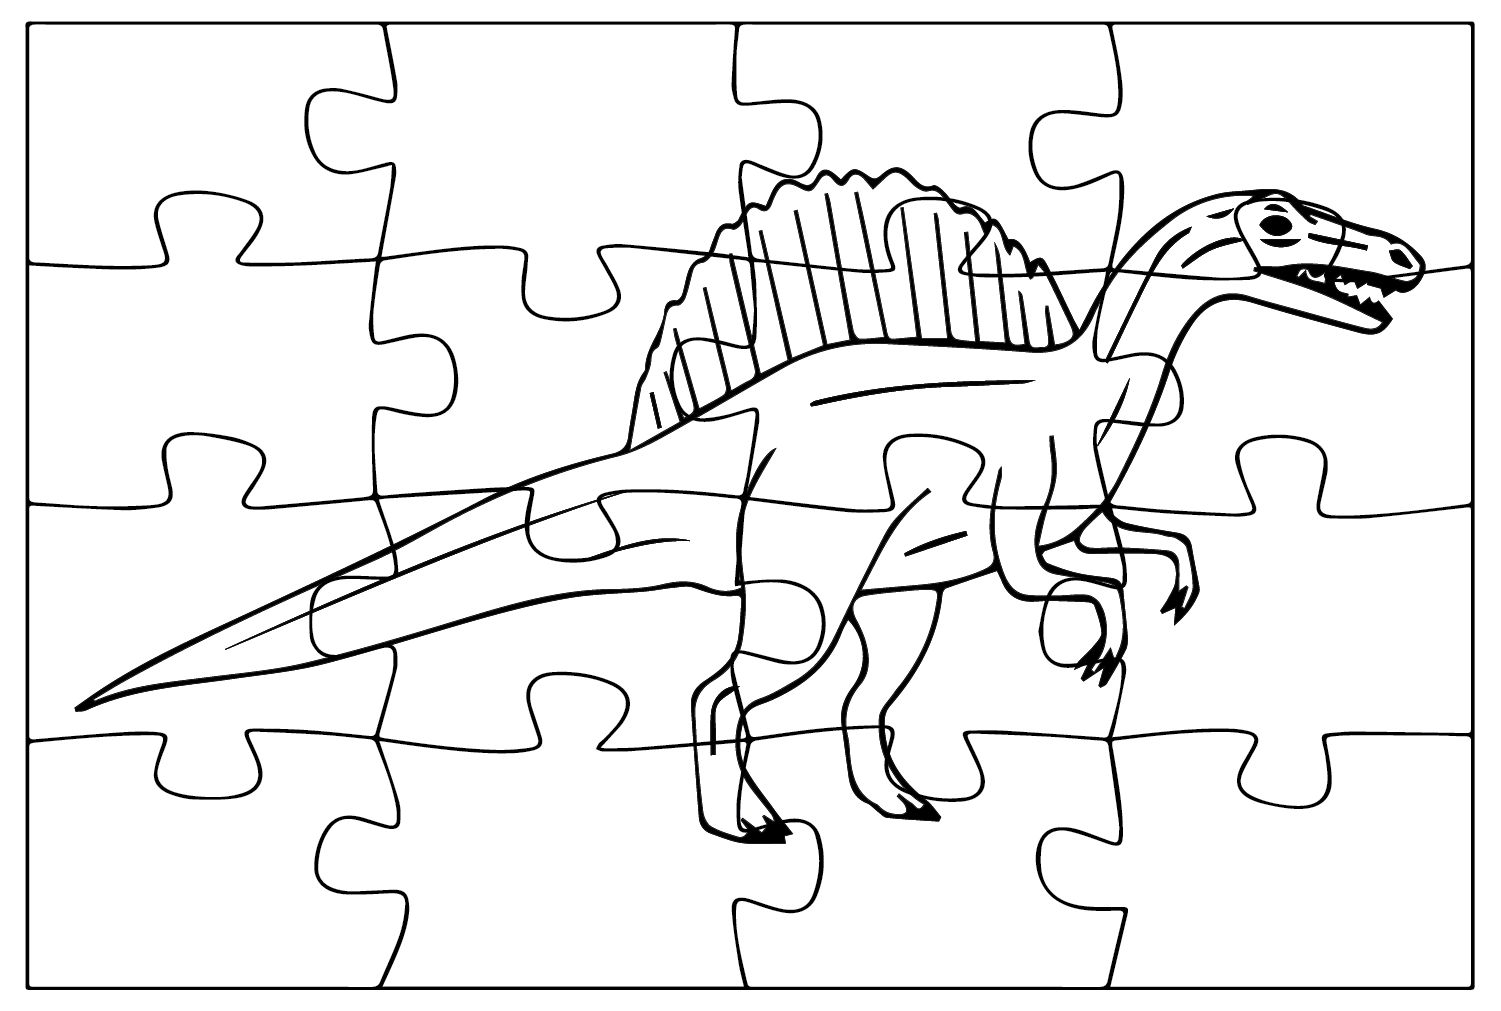 Spinosaurus Aegyptiacus Jigsaw Puzzles to Color from Spinosaurus Aegyptiacus